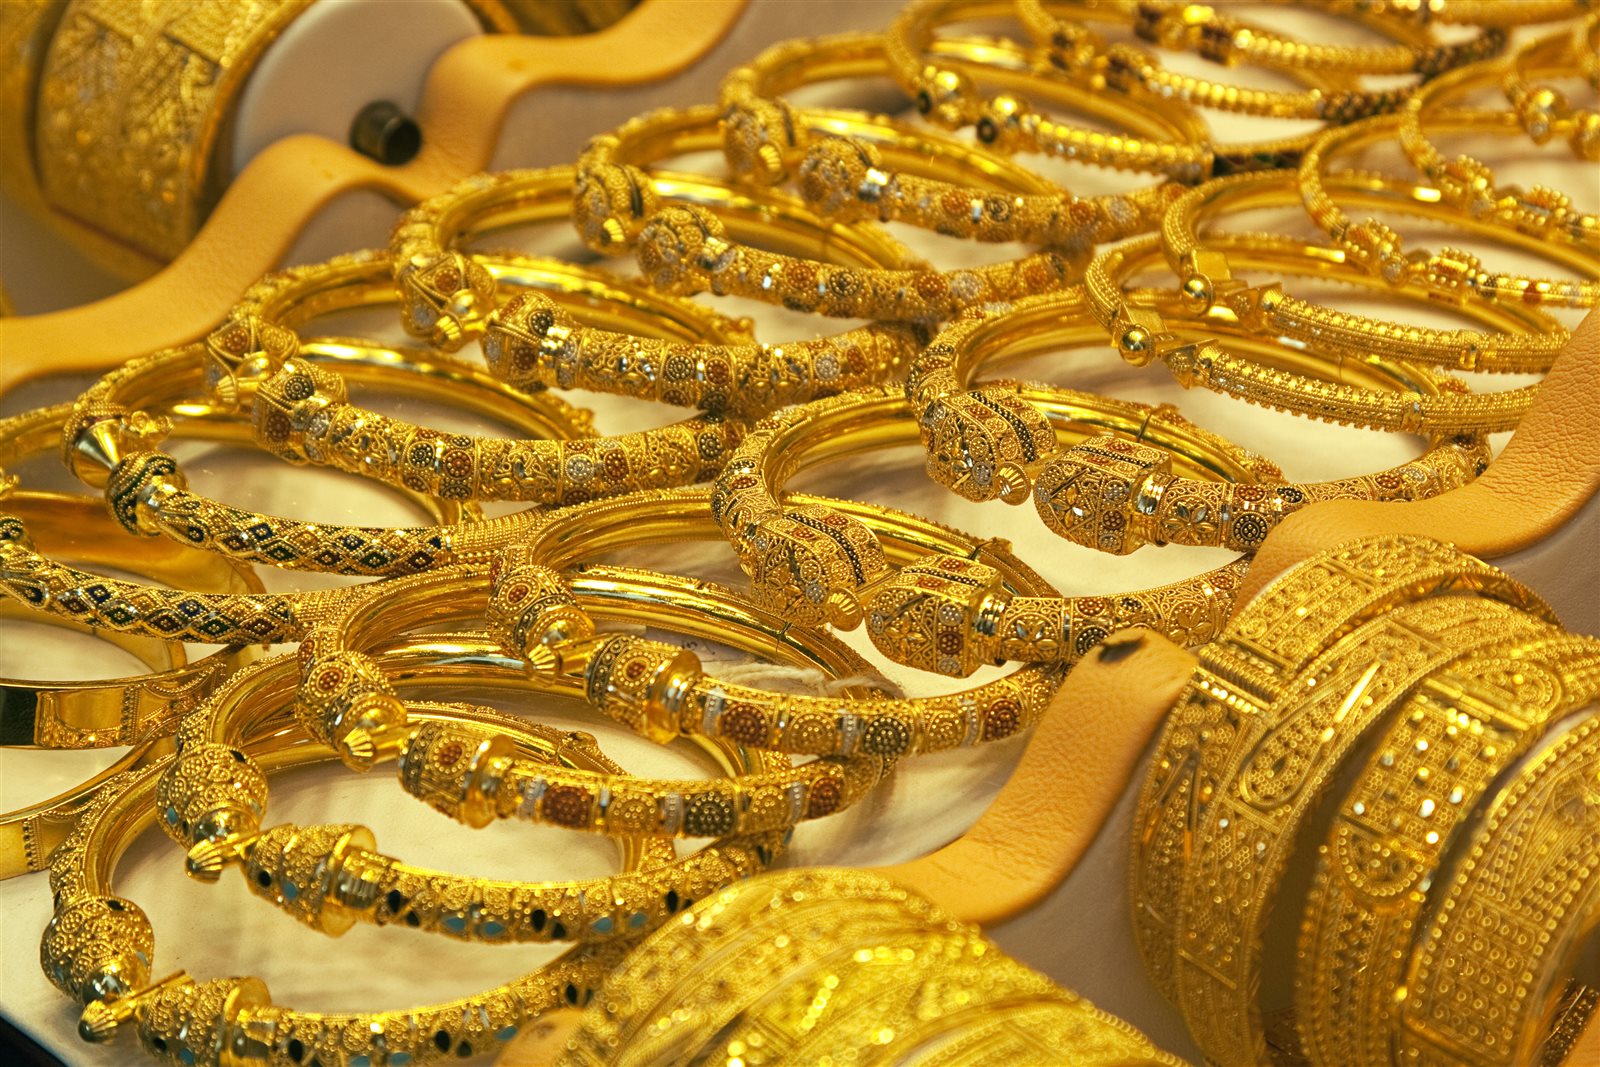  سعر جرام الذهب اليوم فى مصر